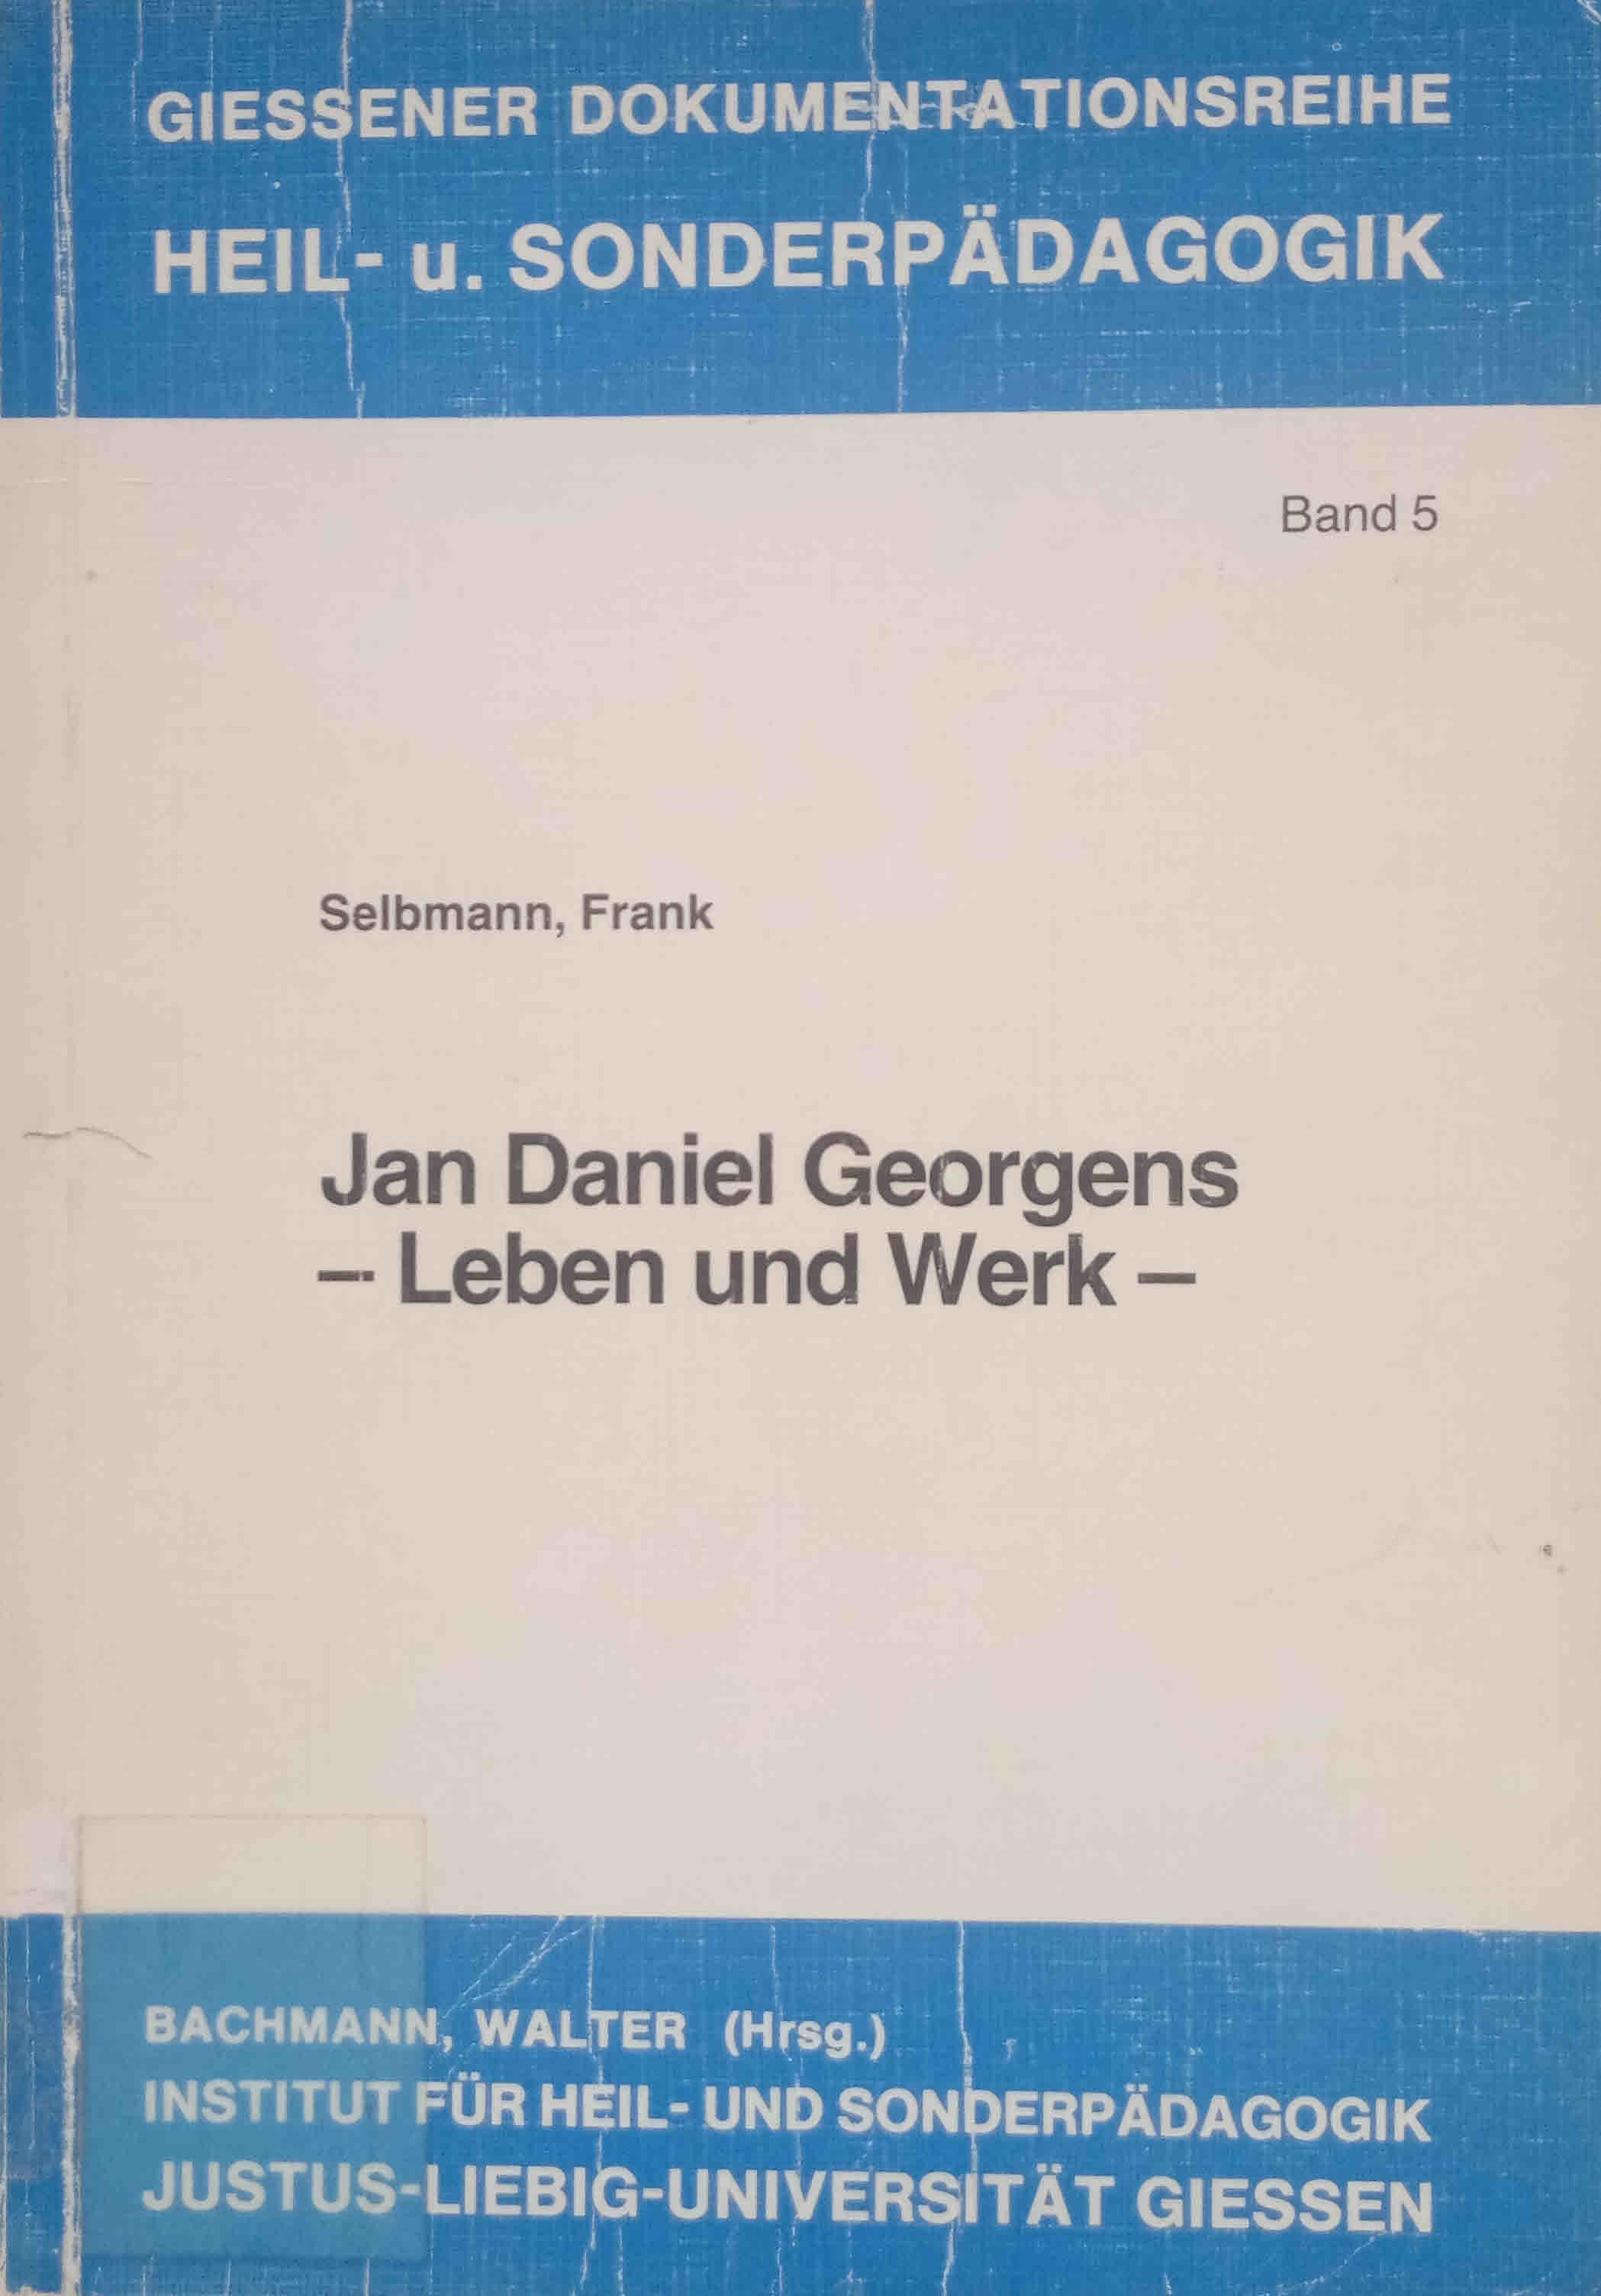 Jan Daniel Georgens : Leben u. Werk. Selbmann, Frank. Bachmann, Walter (Hrsg.) / Giessener Dokumentationsreihe Heil- und Sonderpädagogik ; Bd. 5 - Selbmann, Frank